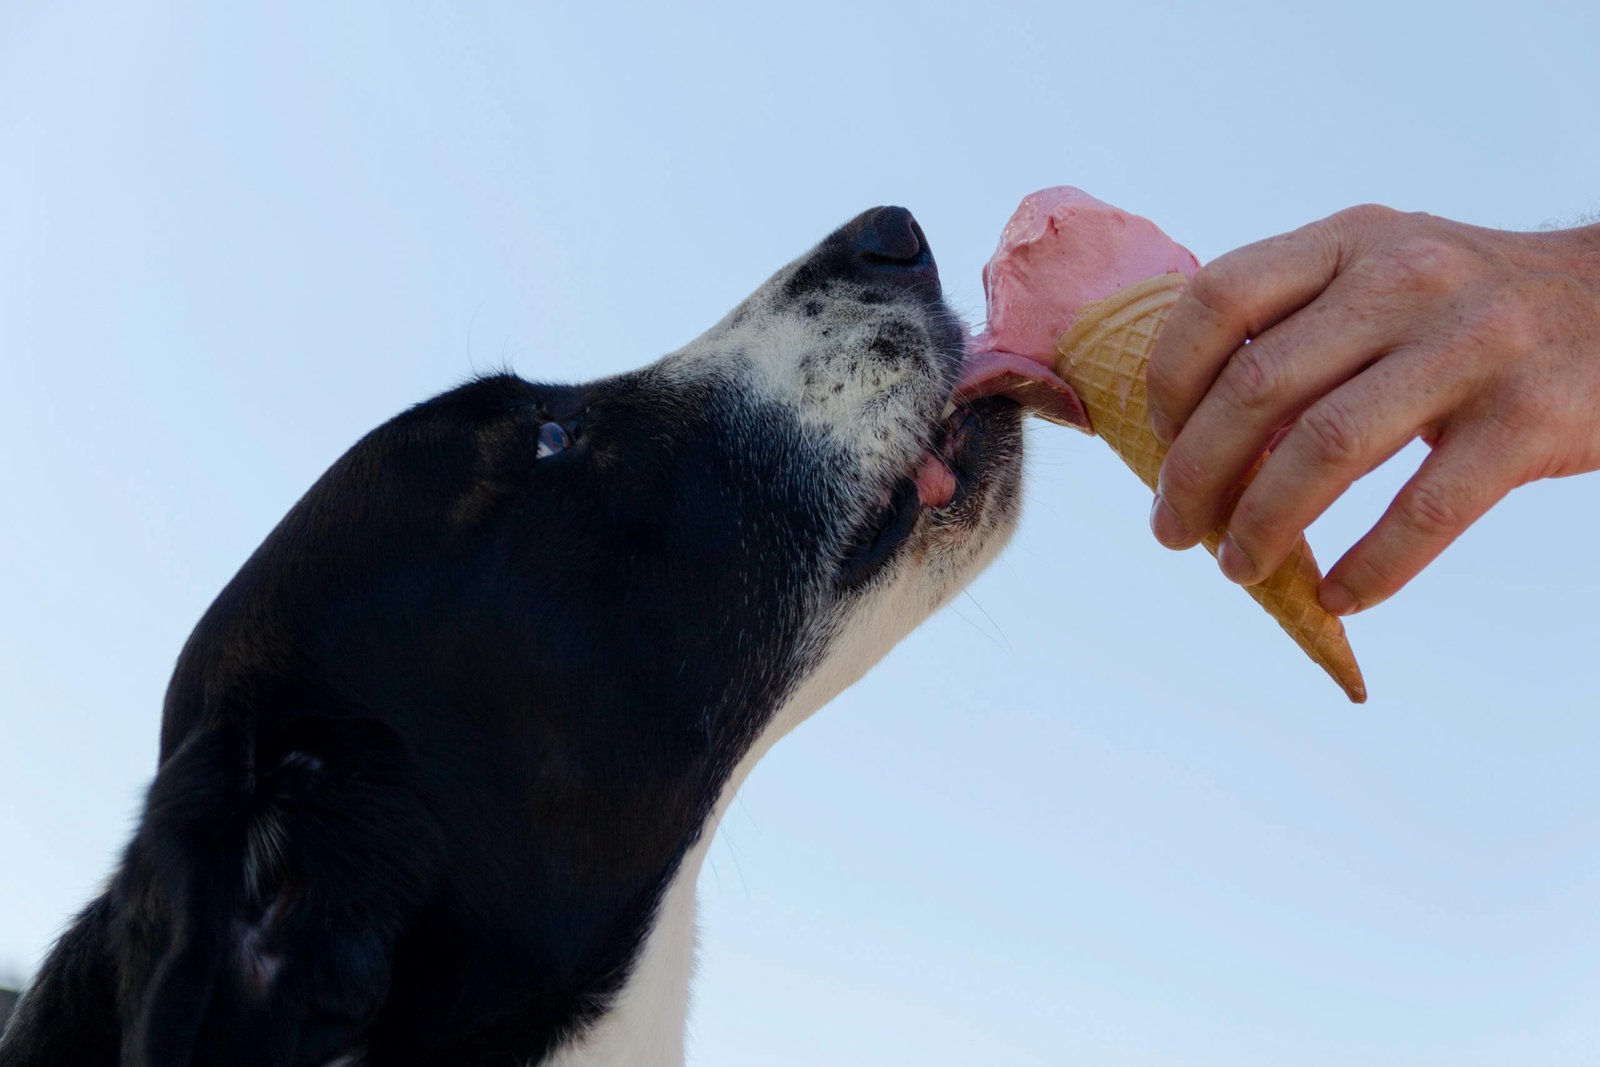 Dog Ice Cream with Strawberry, Banana, and Yogurt